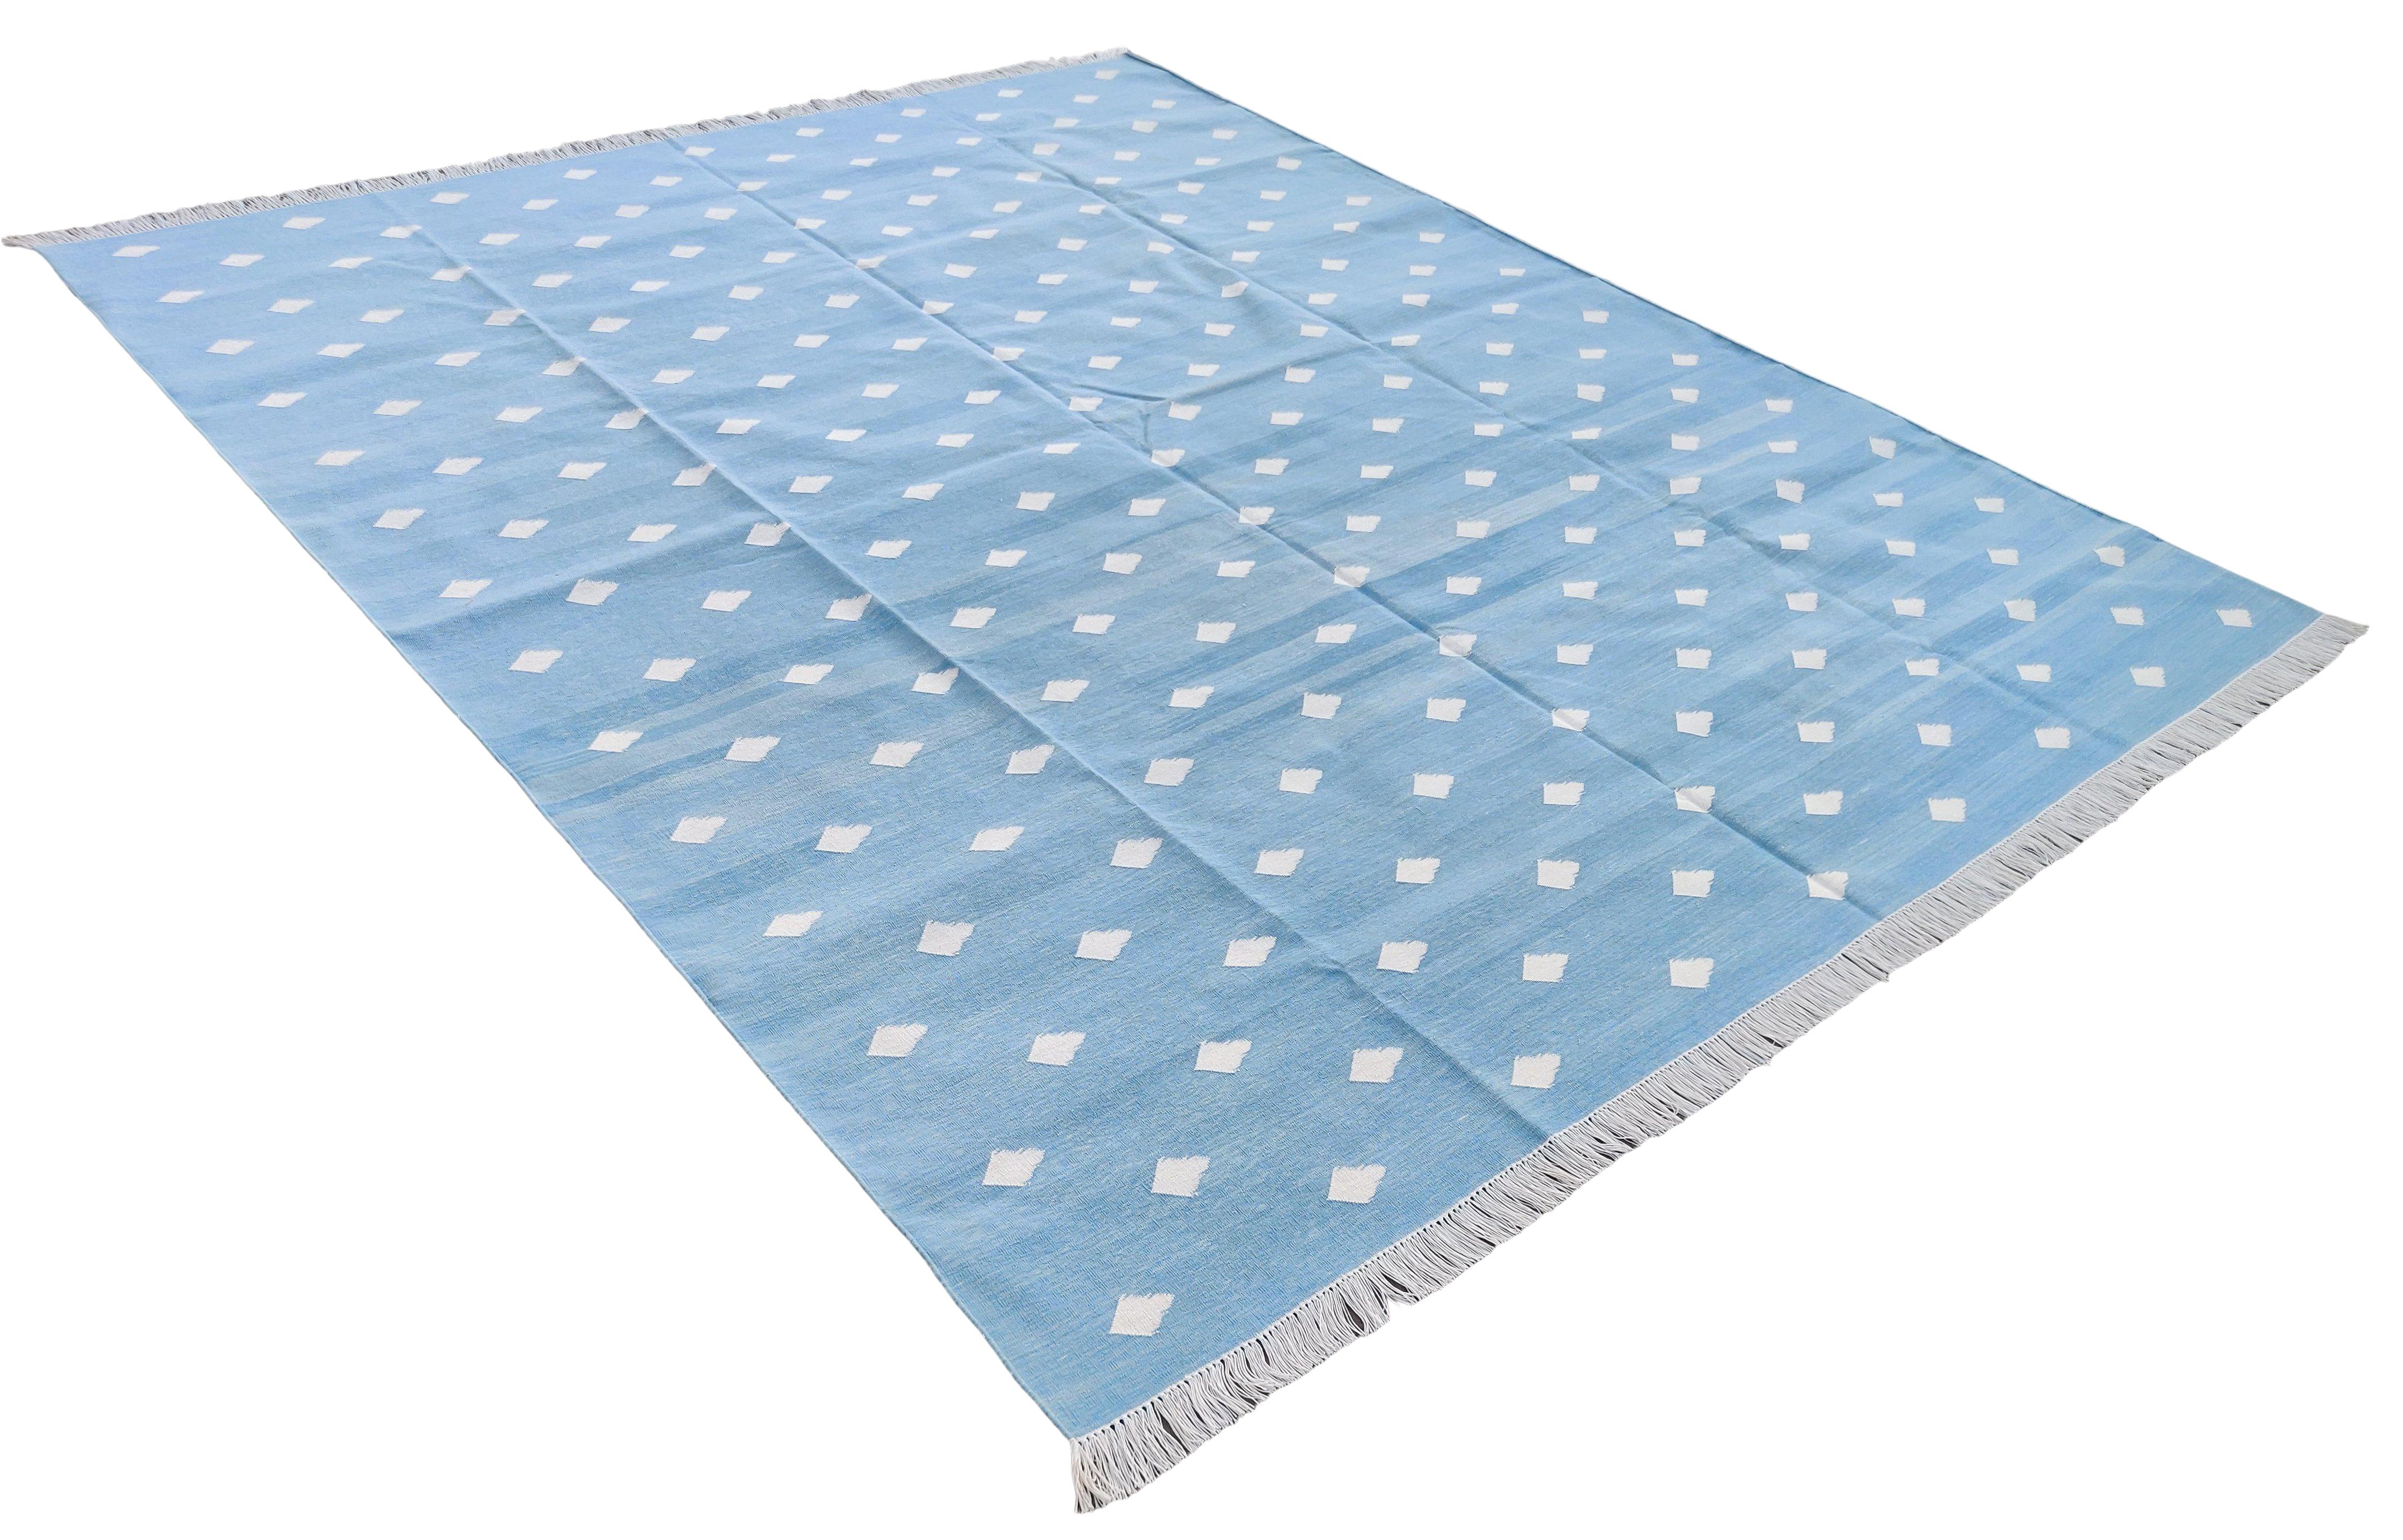 Baumwolle natürlich pflanzlich gefärbt, himmelblau & weiß blattgemustert Teppich-8'x10'
Diese speziellen flachgewebten Dhurries werden aus 15-fachem Garn aus 100% Baumwolle handgewebt. Aufgrund der speziellen Fertigungstechniken, die zur Herstellung